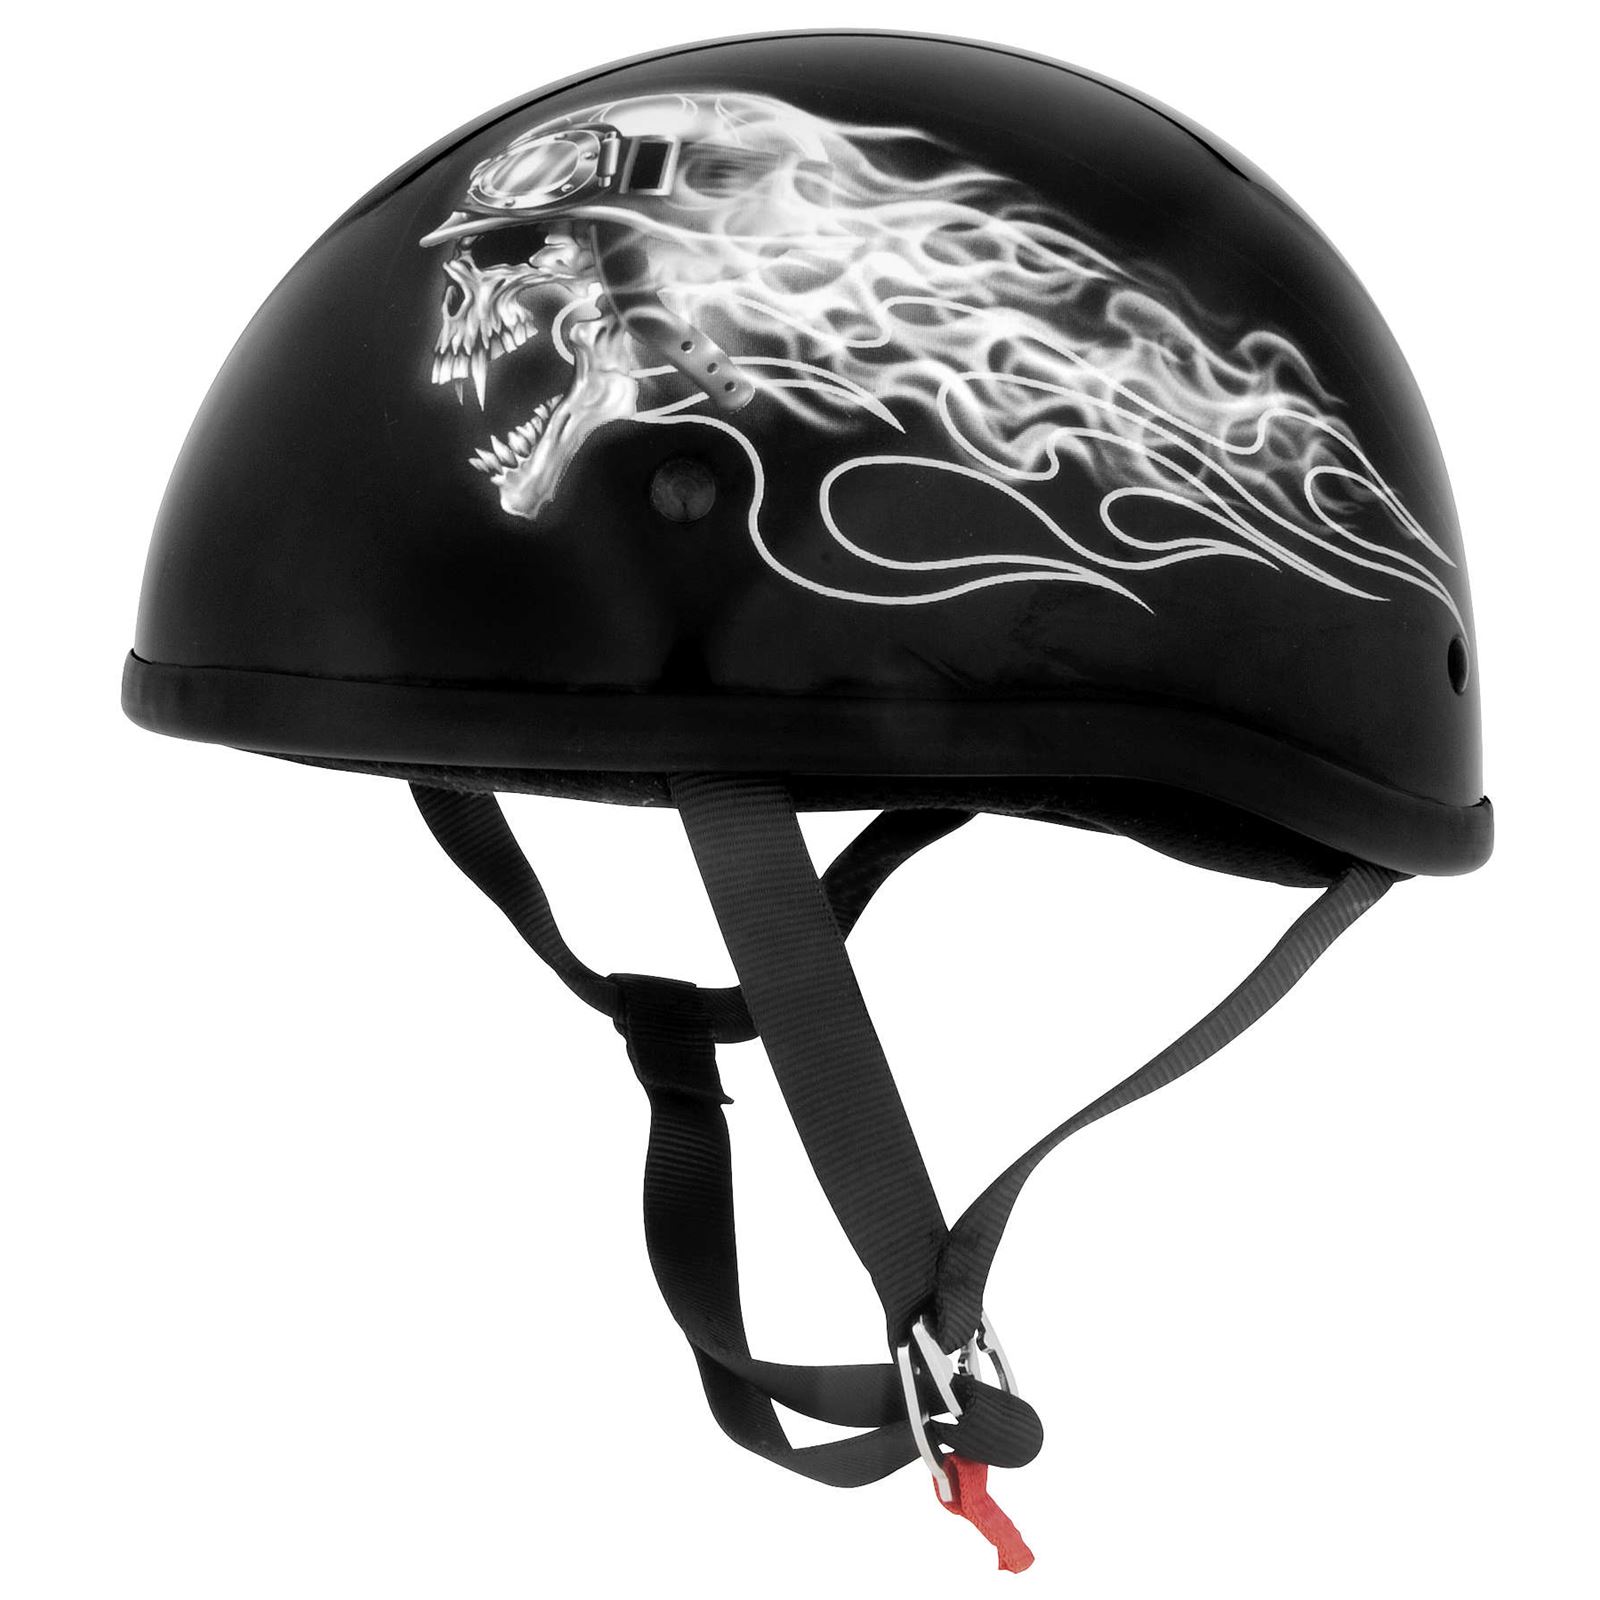 Skid Lid Helmets Original Lethal Threat Biker Skull Helmet - Black/White - XS